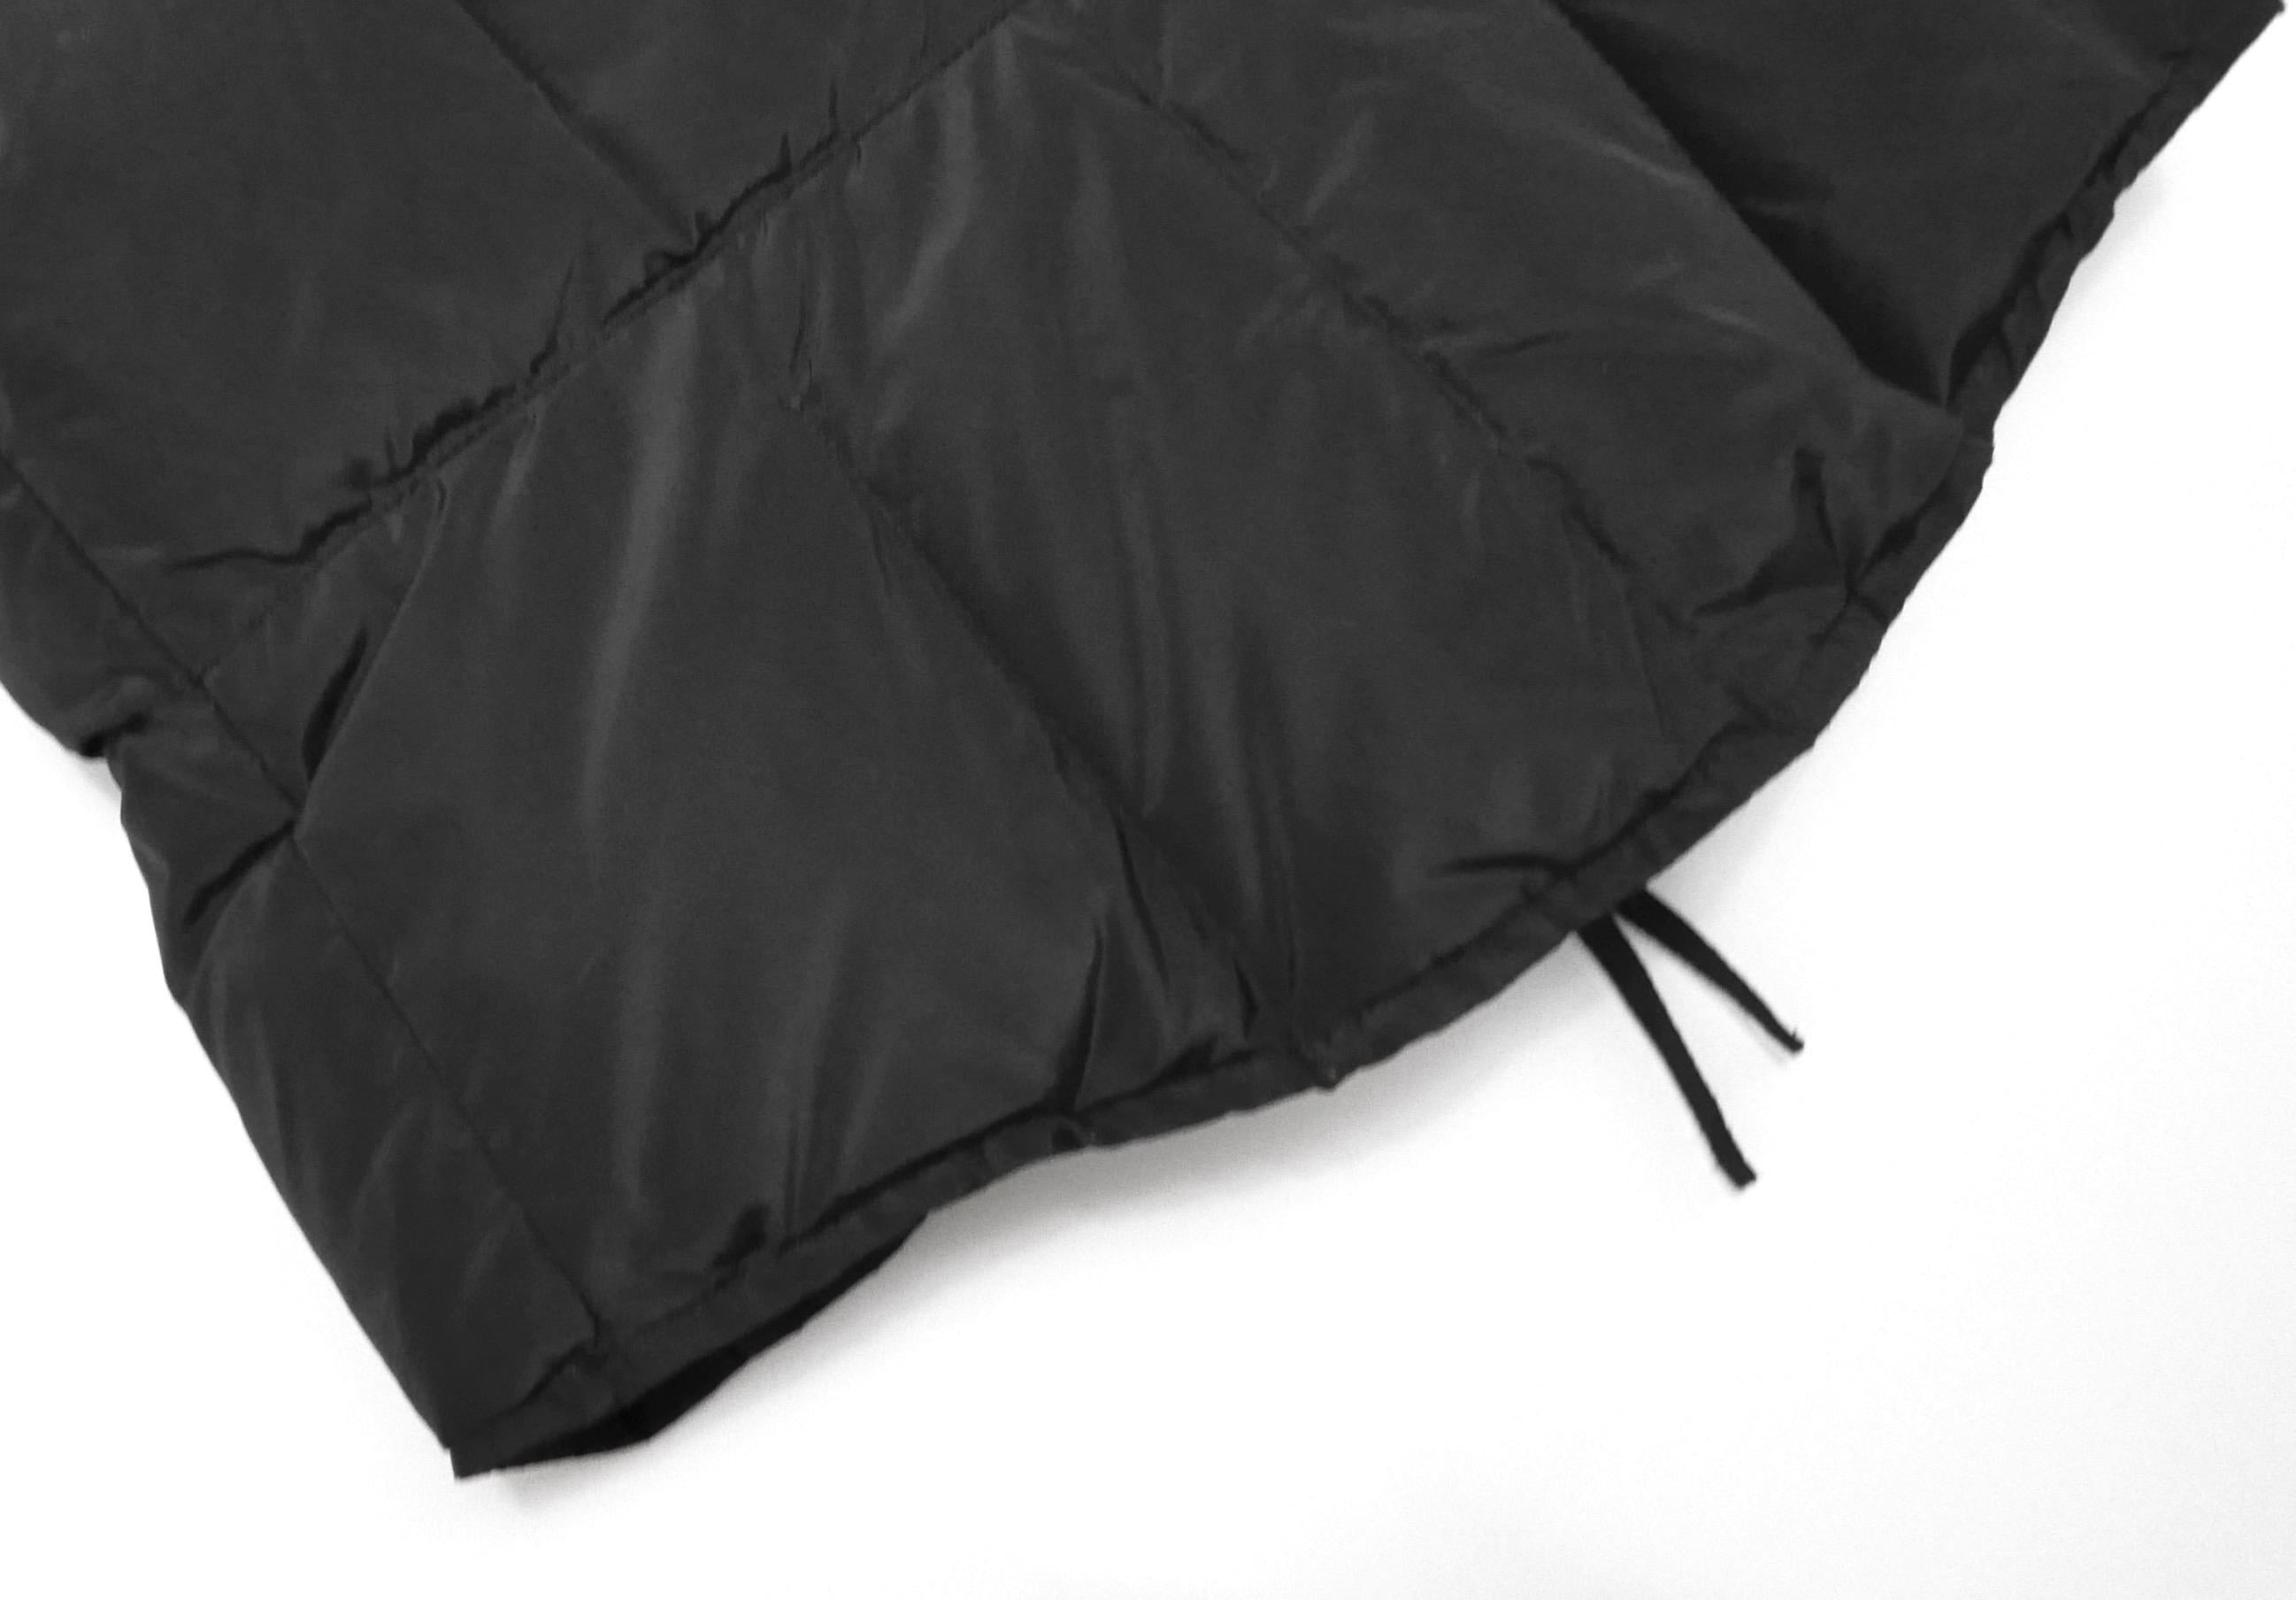 Yves Saint Laurent x Stefano Pilati 2009 Sleeveless Puffer Jacket  For Sale 2